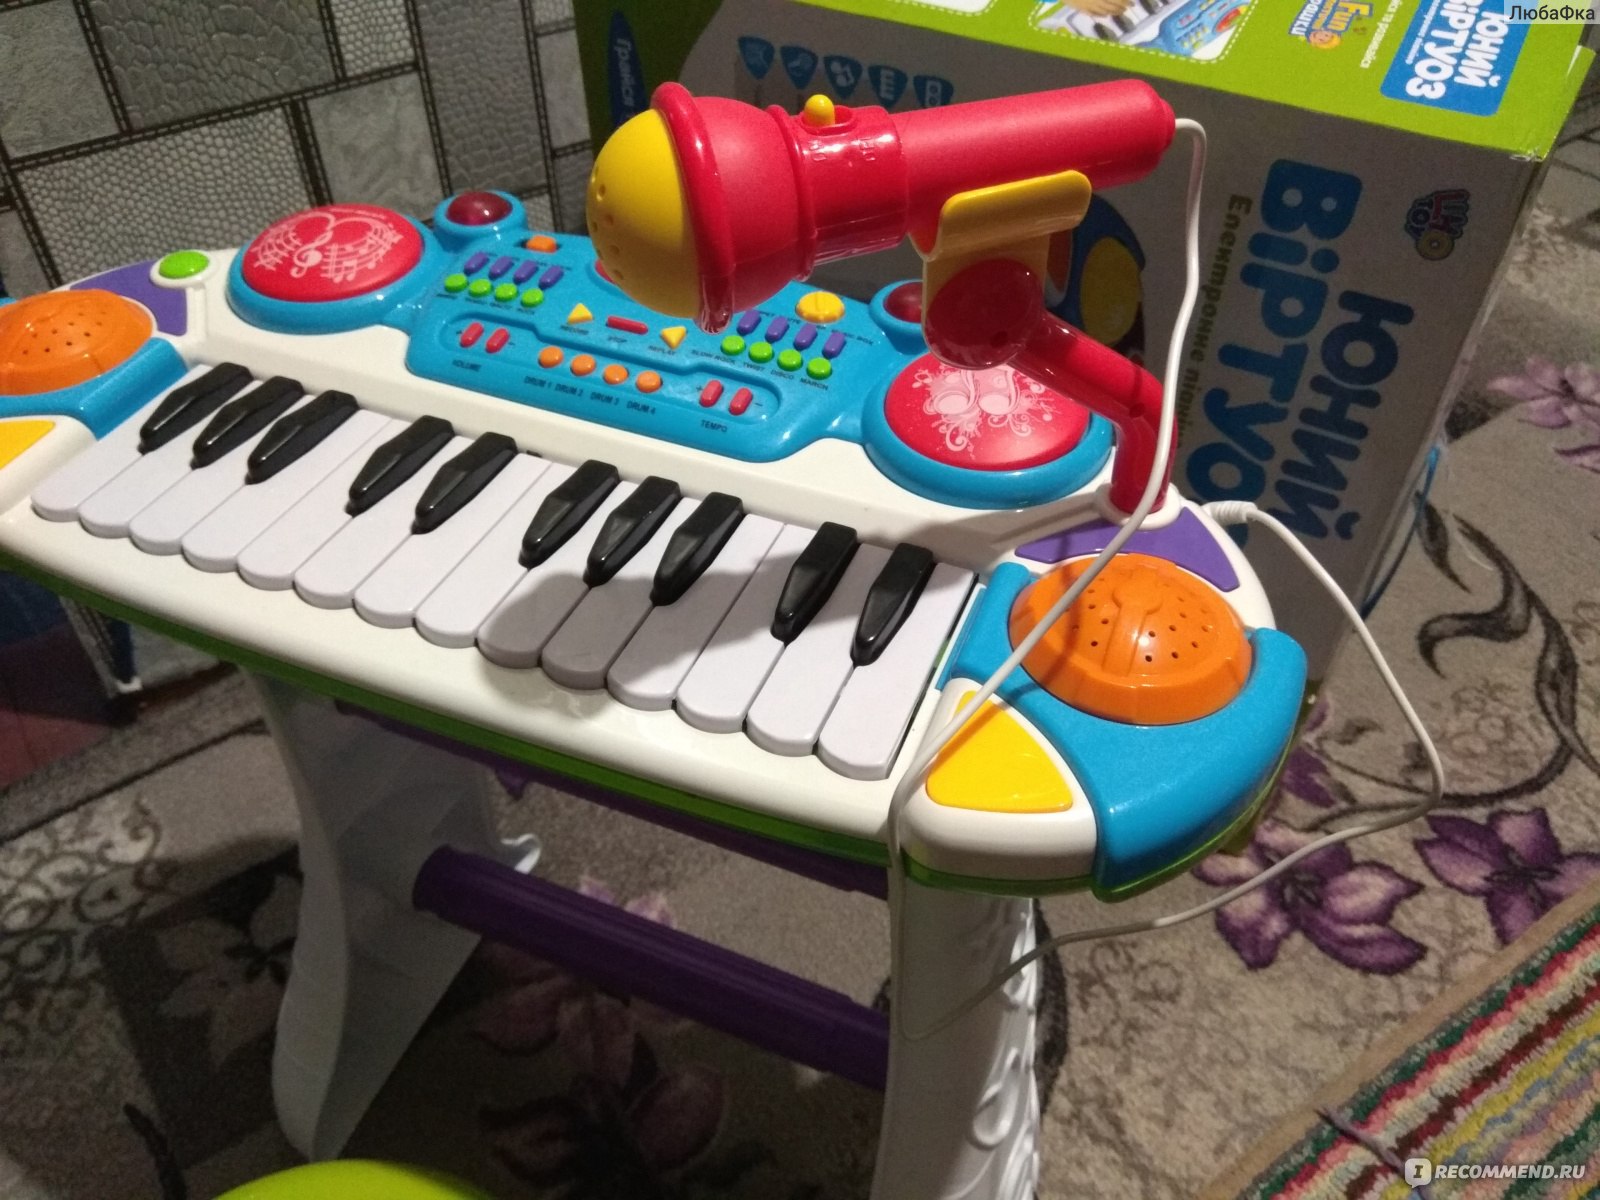 Детское пианино с микрофоном и стульчиком 16 Мелоди